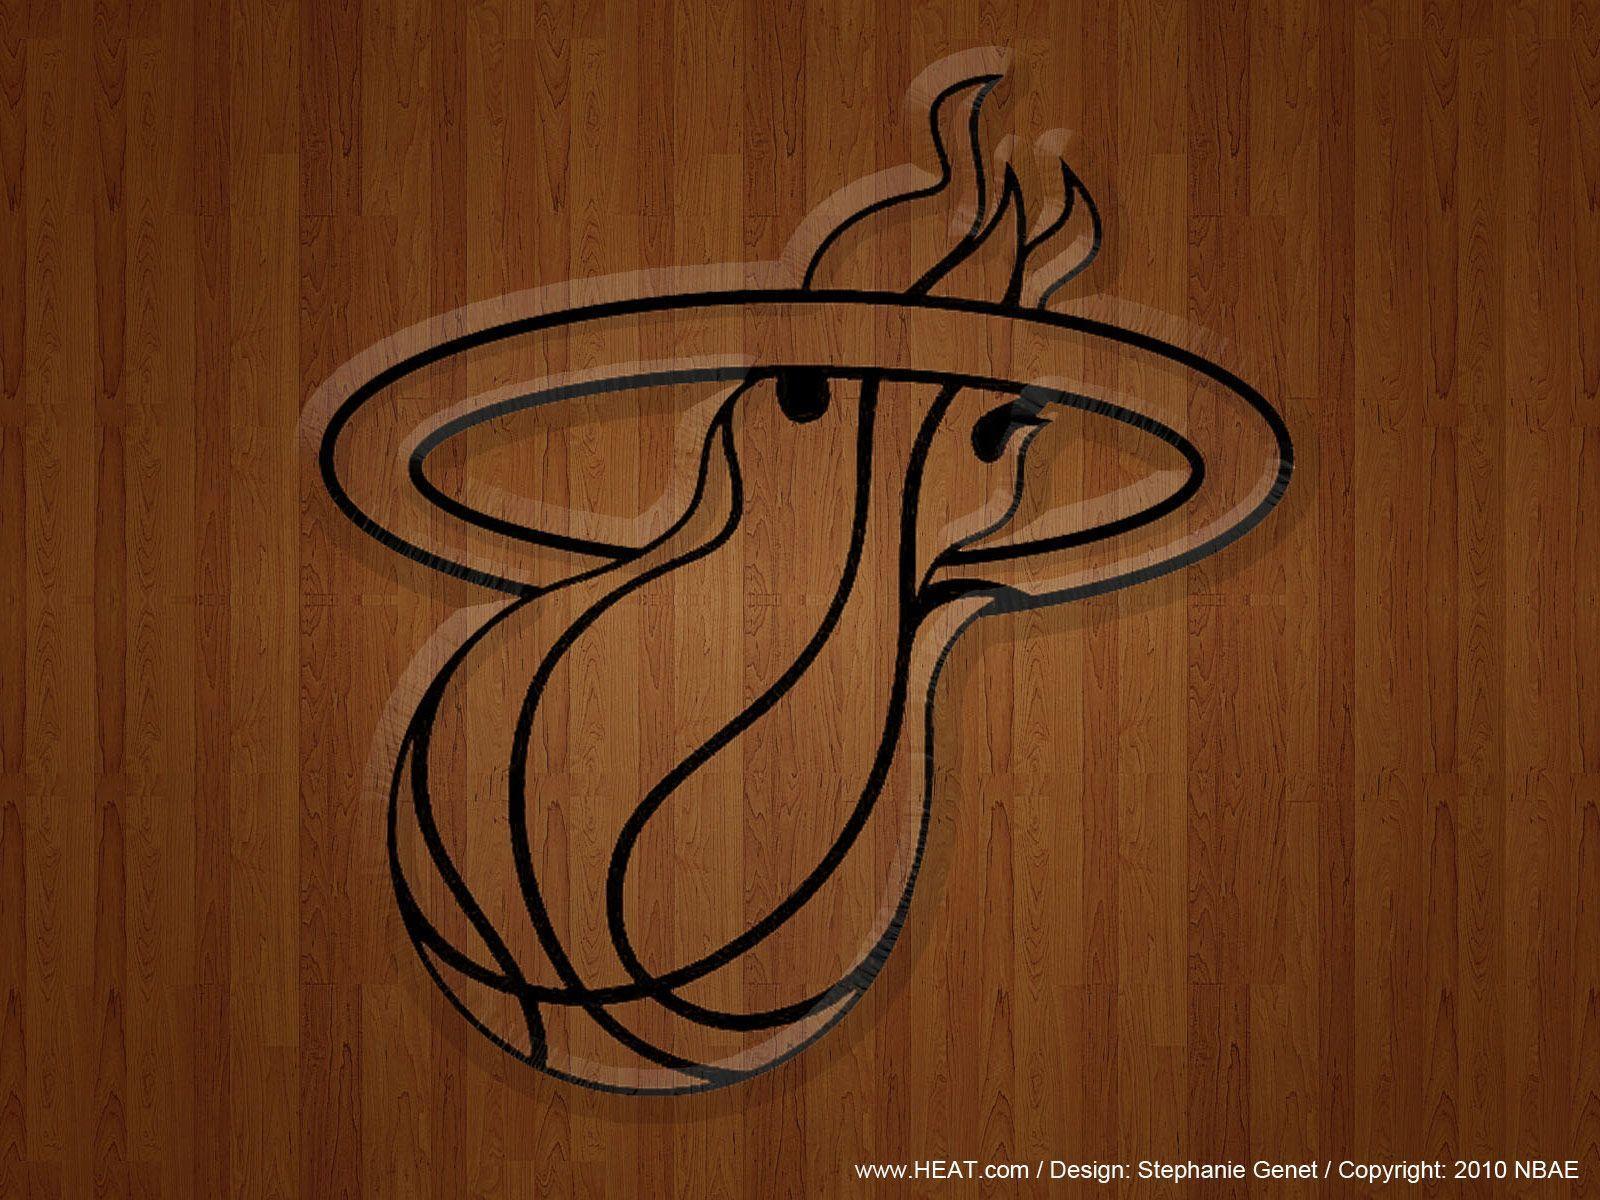 Miami Heat Logo 14 87780 Image HD Wallpaper. Wallfoy